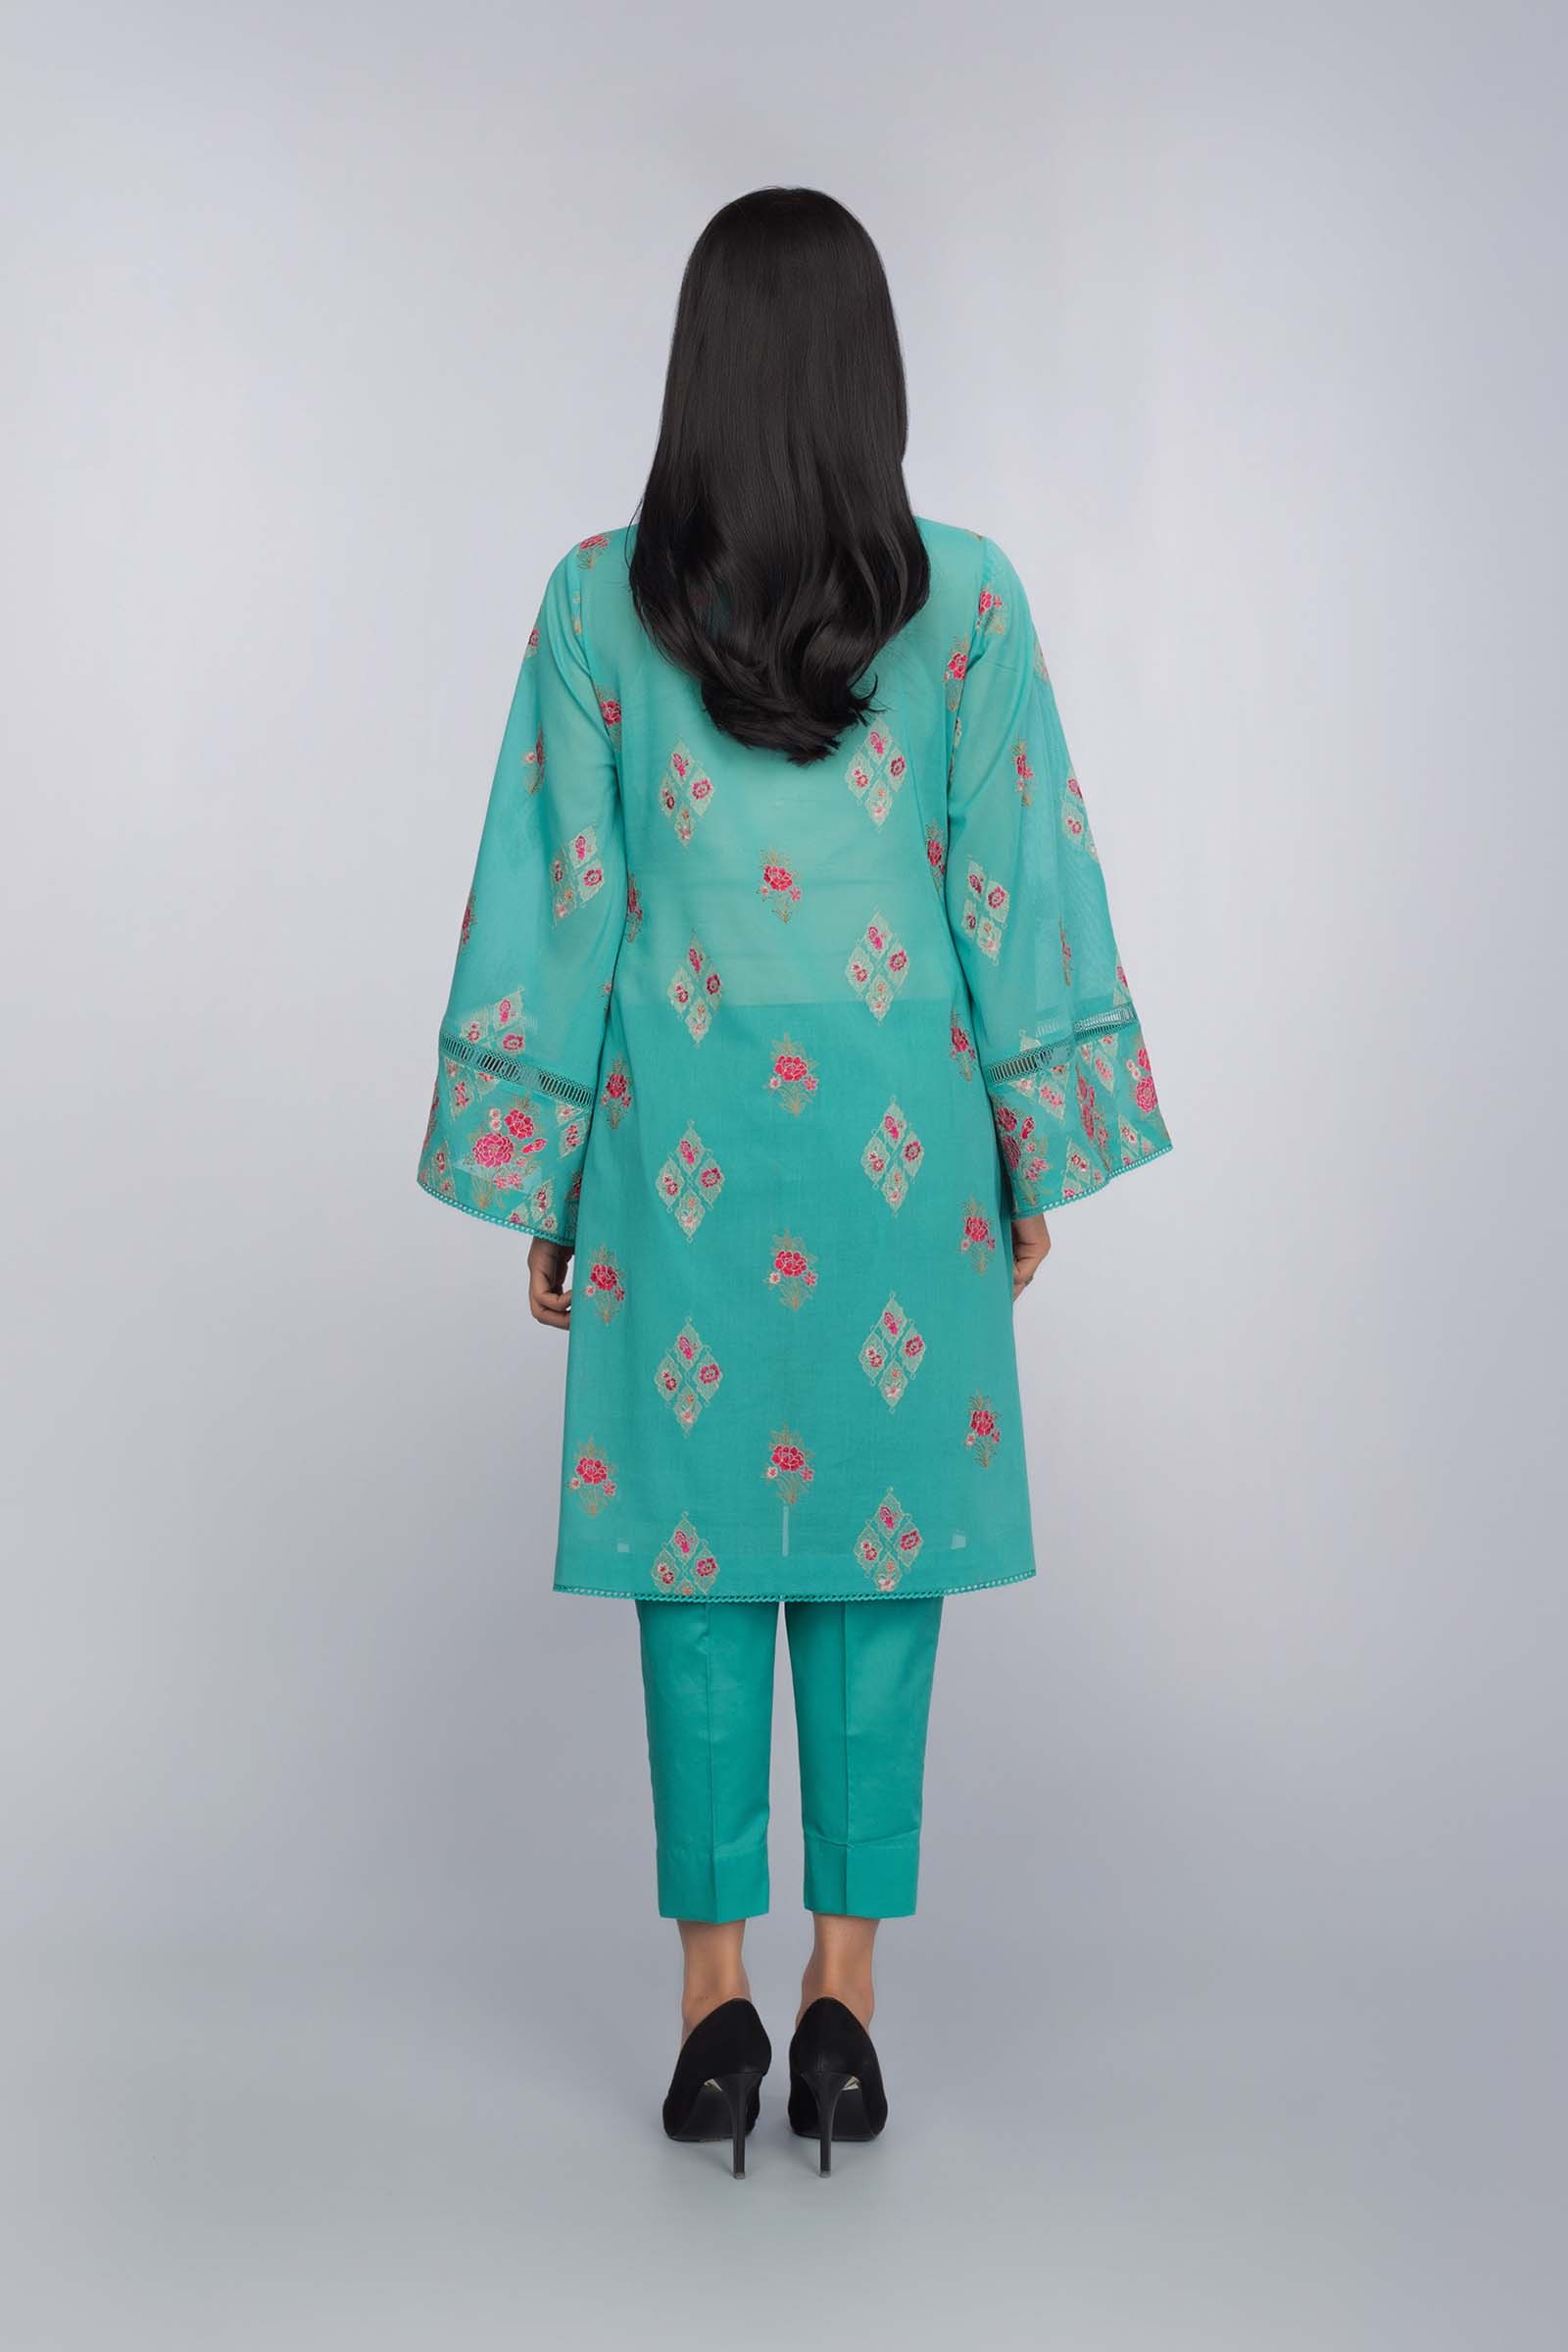 Pakistani Designer Creation Premium Lawn Suit at Bareeze Summer Clearance Sale 